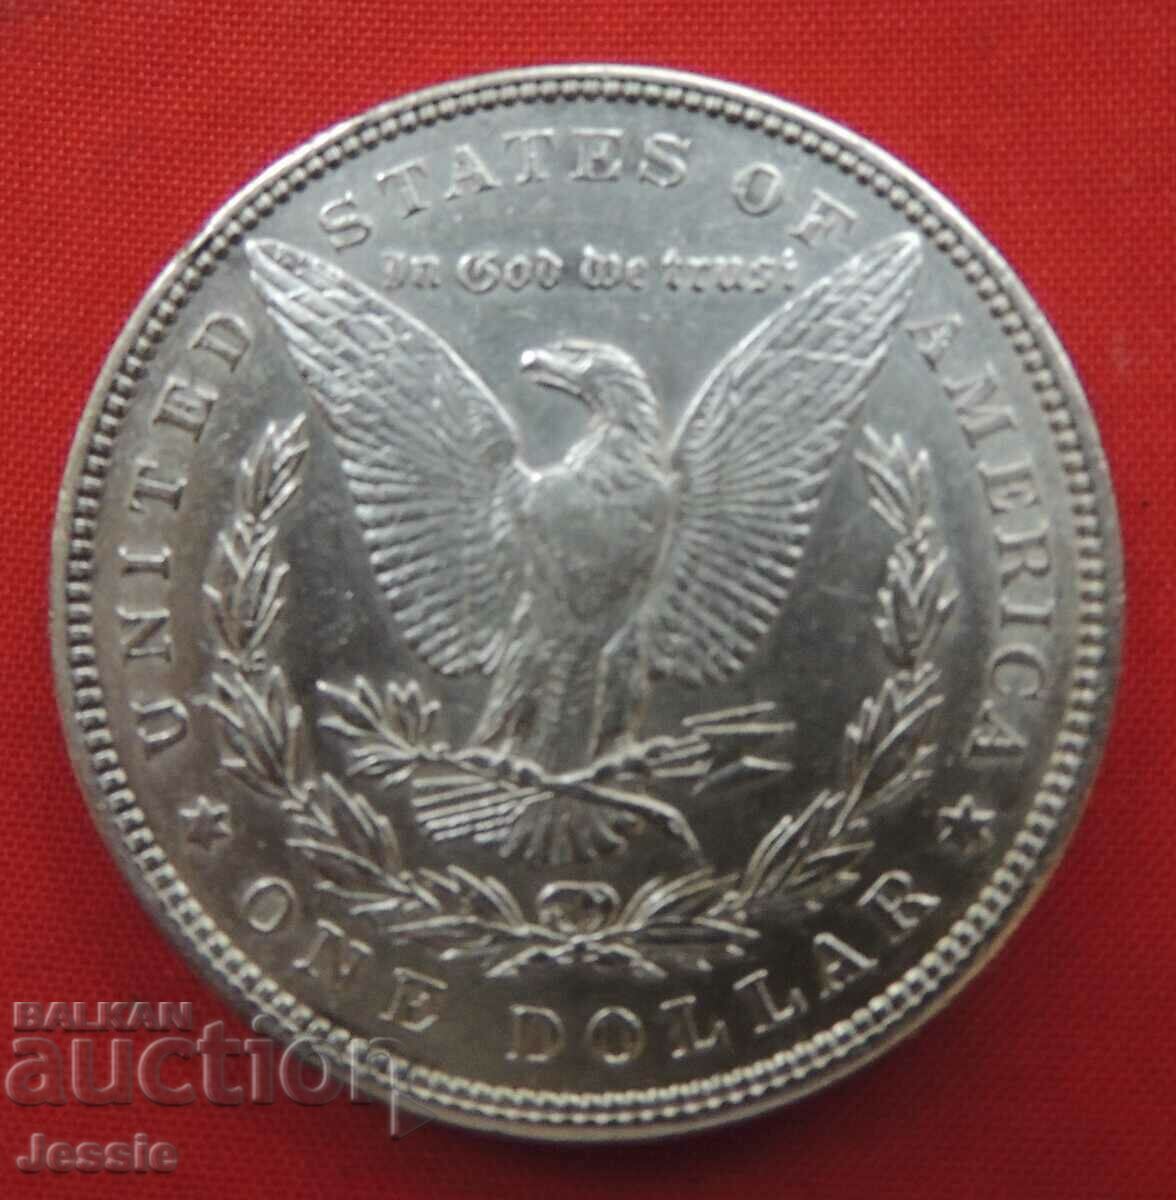 1 Dollar 1897 USA Morgan Silver NO MADE IN CHINA !